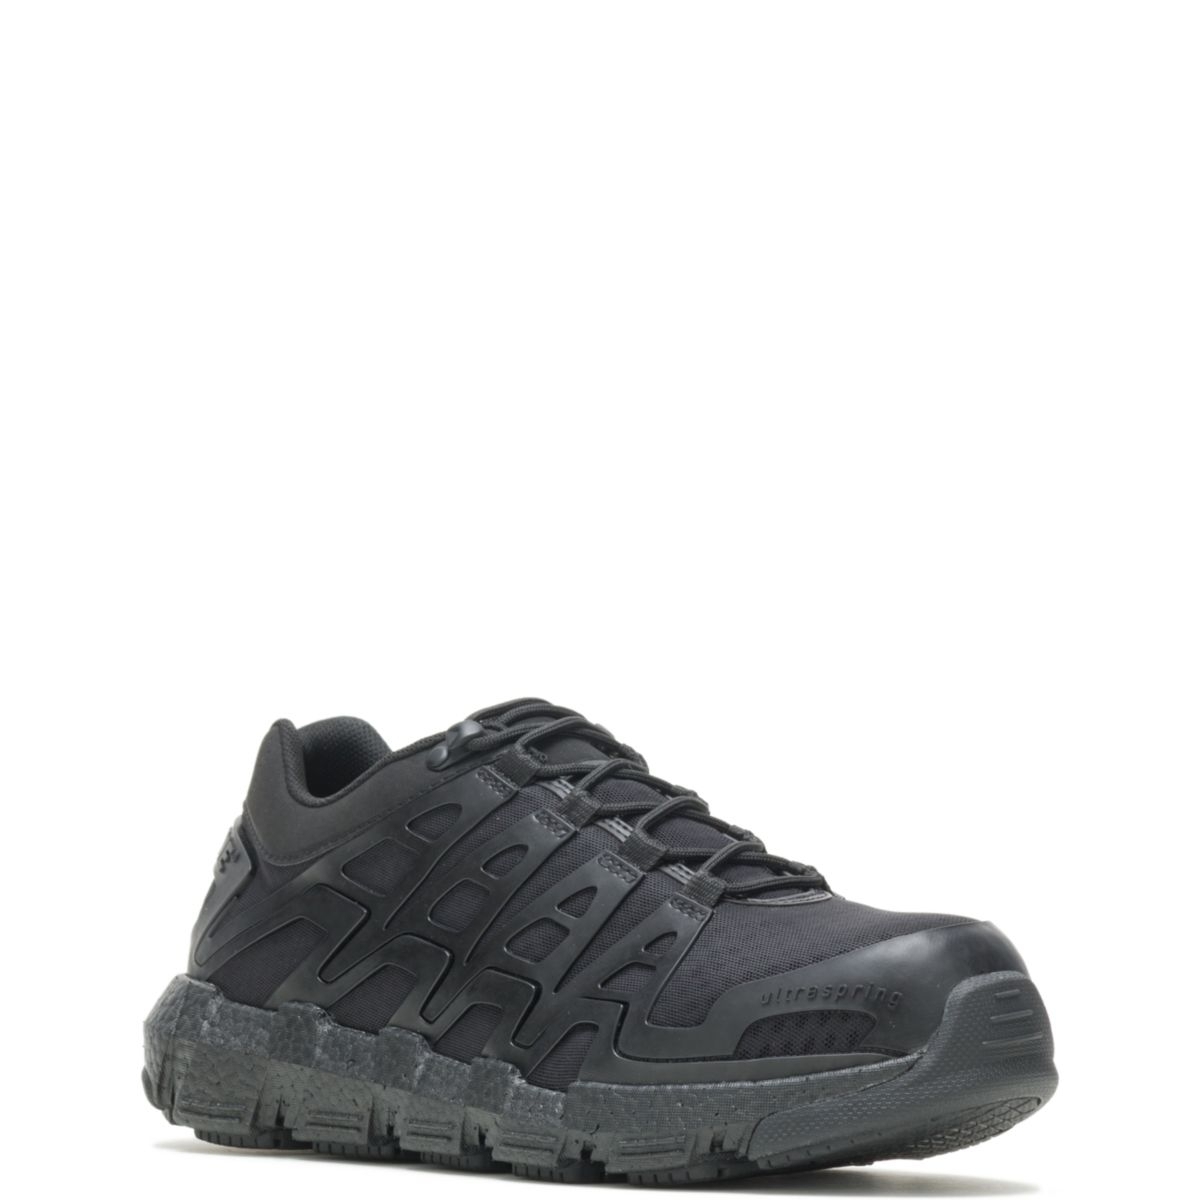 WOLVERINE Men's Rev Vent UltraSpringâ¢ DuraShocksÂ® CarbonMAXÂ® Composite Toe Work Shoe Black - W211017 BLACK - BLACK, 10.5